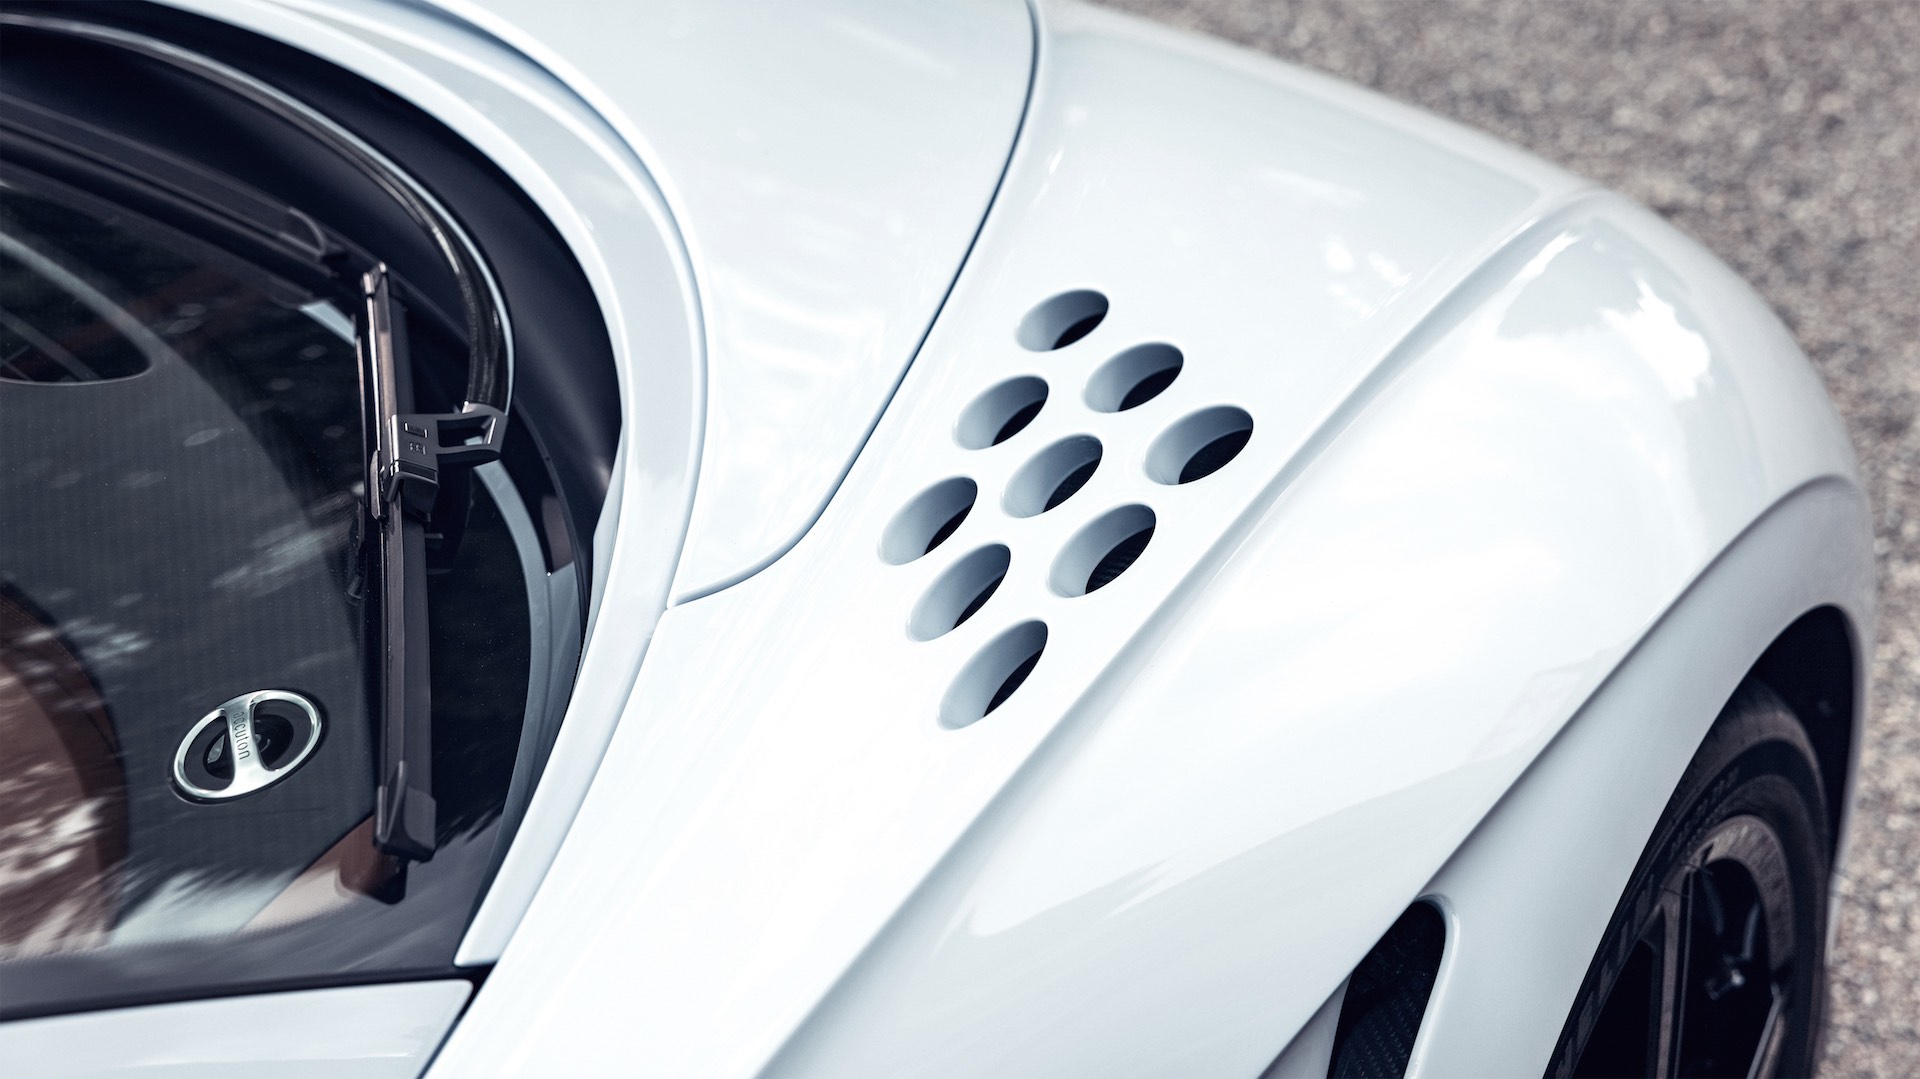 Siêu phẩm Bugatti Chiron Super Sport ra mắt: Giới hạn 60 xe, giá 3,9 triệu USD - Ảnh 7.